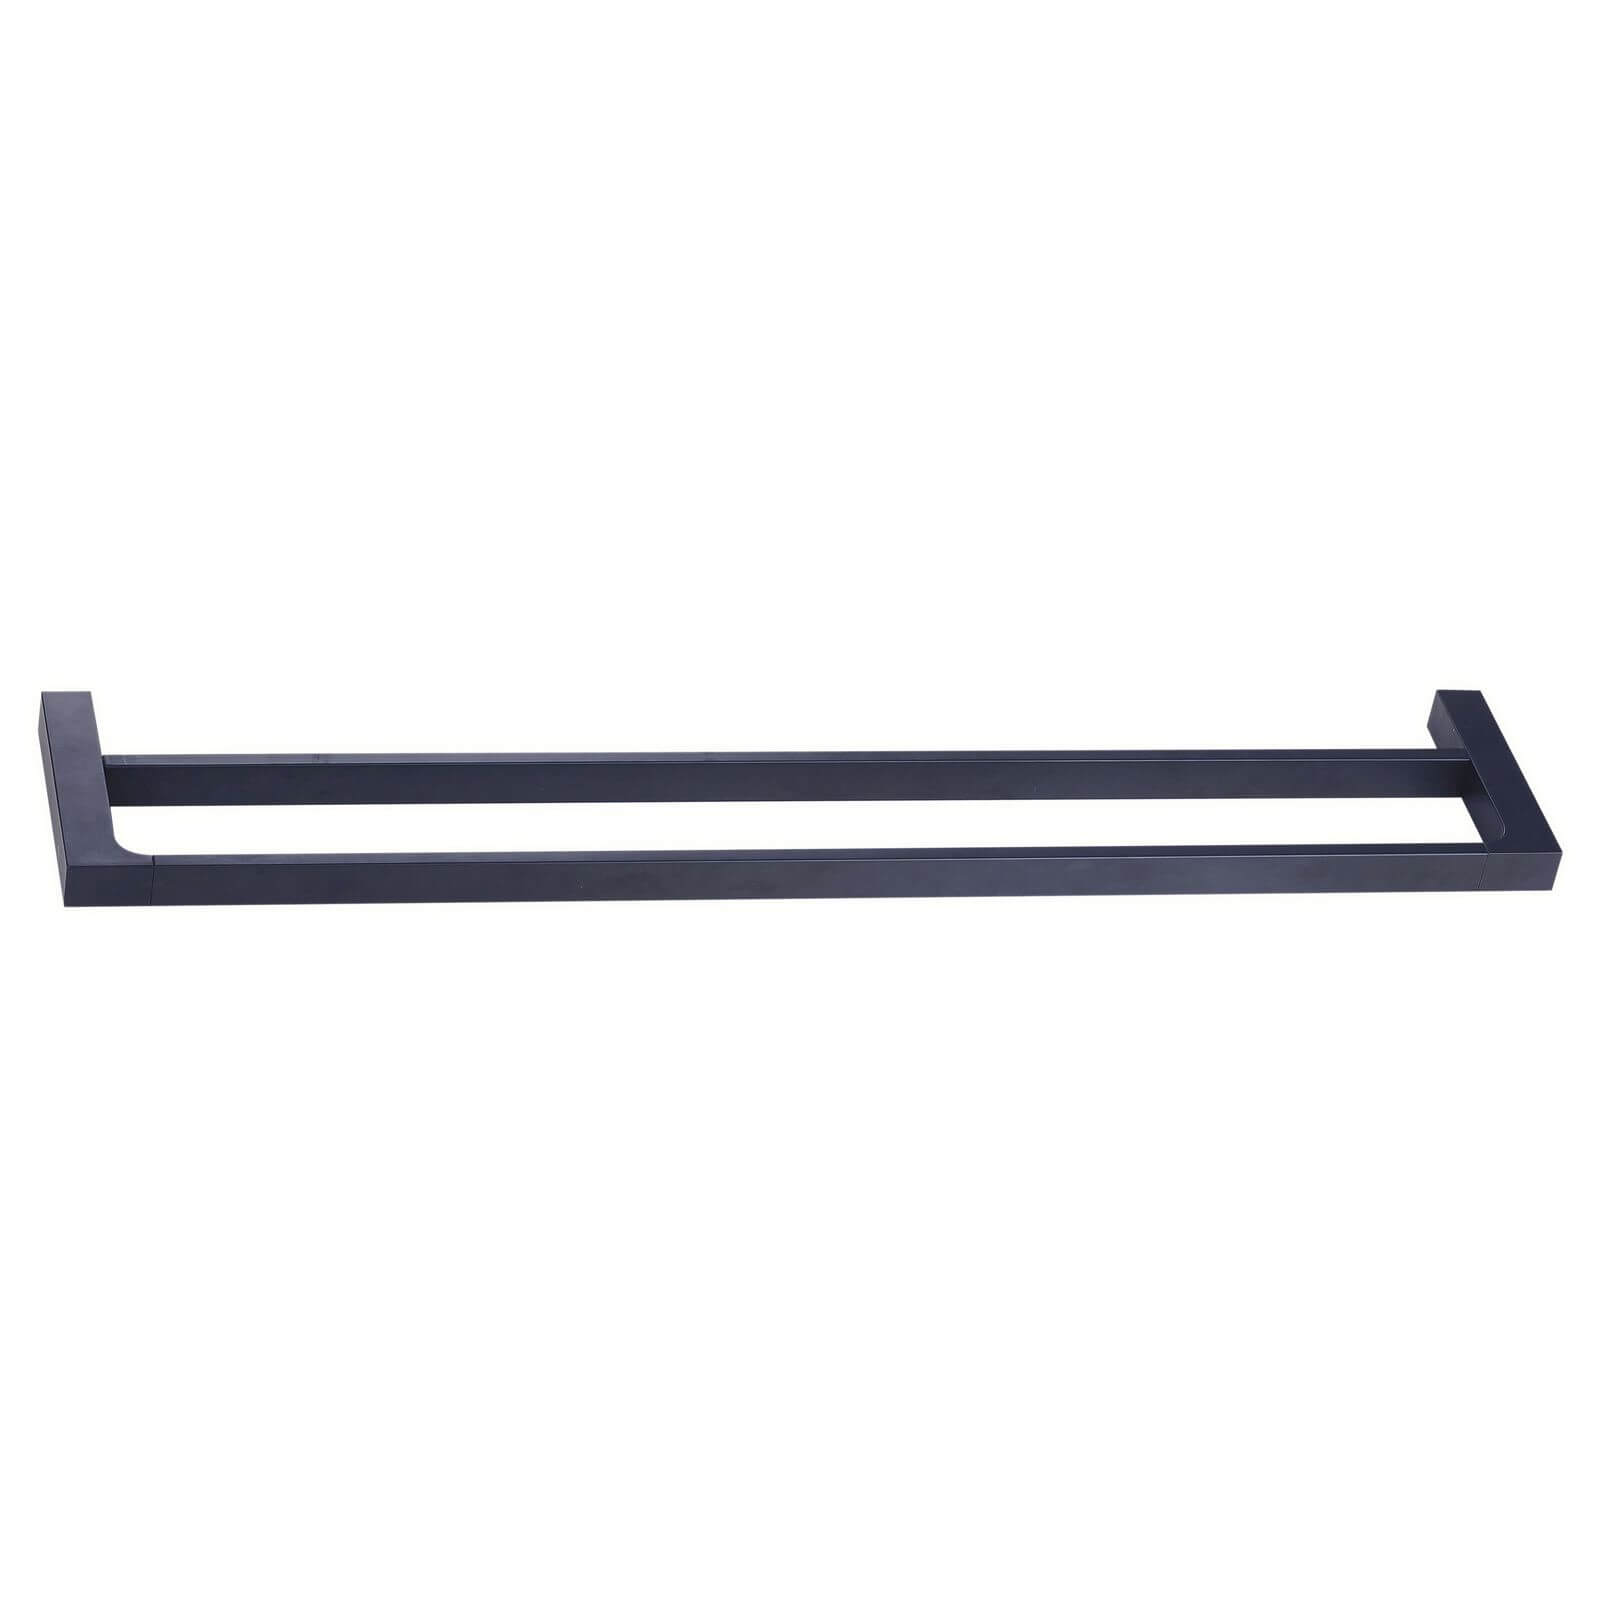 Mondella Vivace Double Towel Rail - 60cm - Black